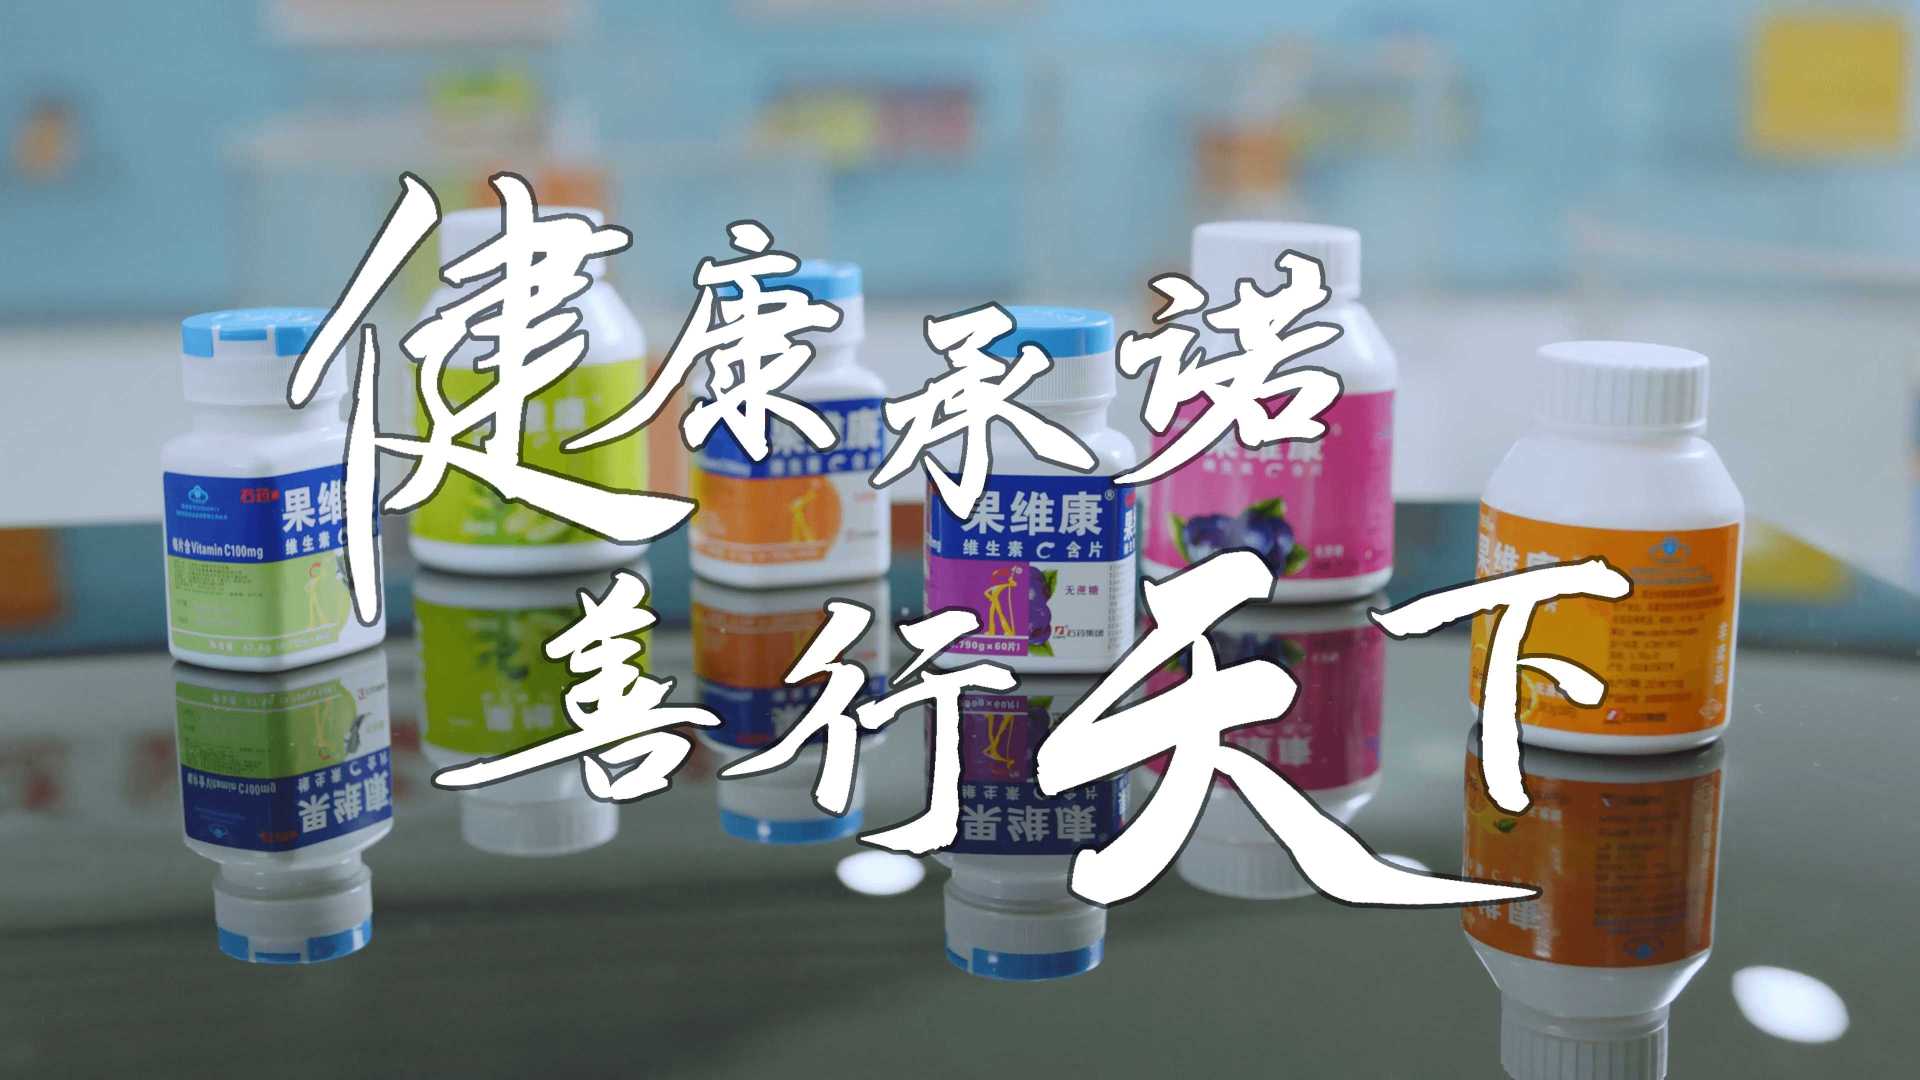 石药新诺威×光年映画丨保健品丨医药企业IPO宣传片